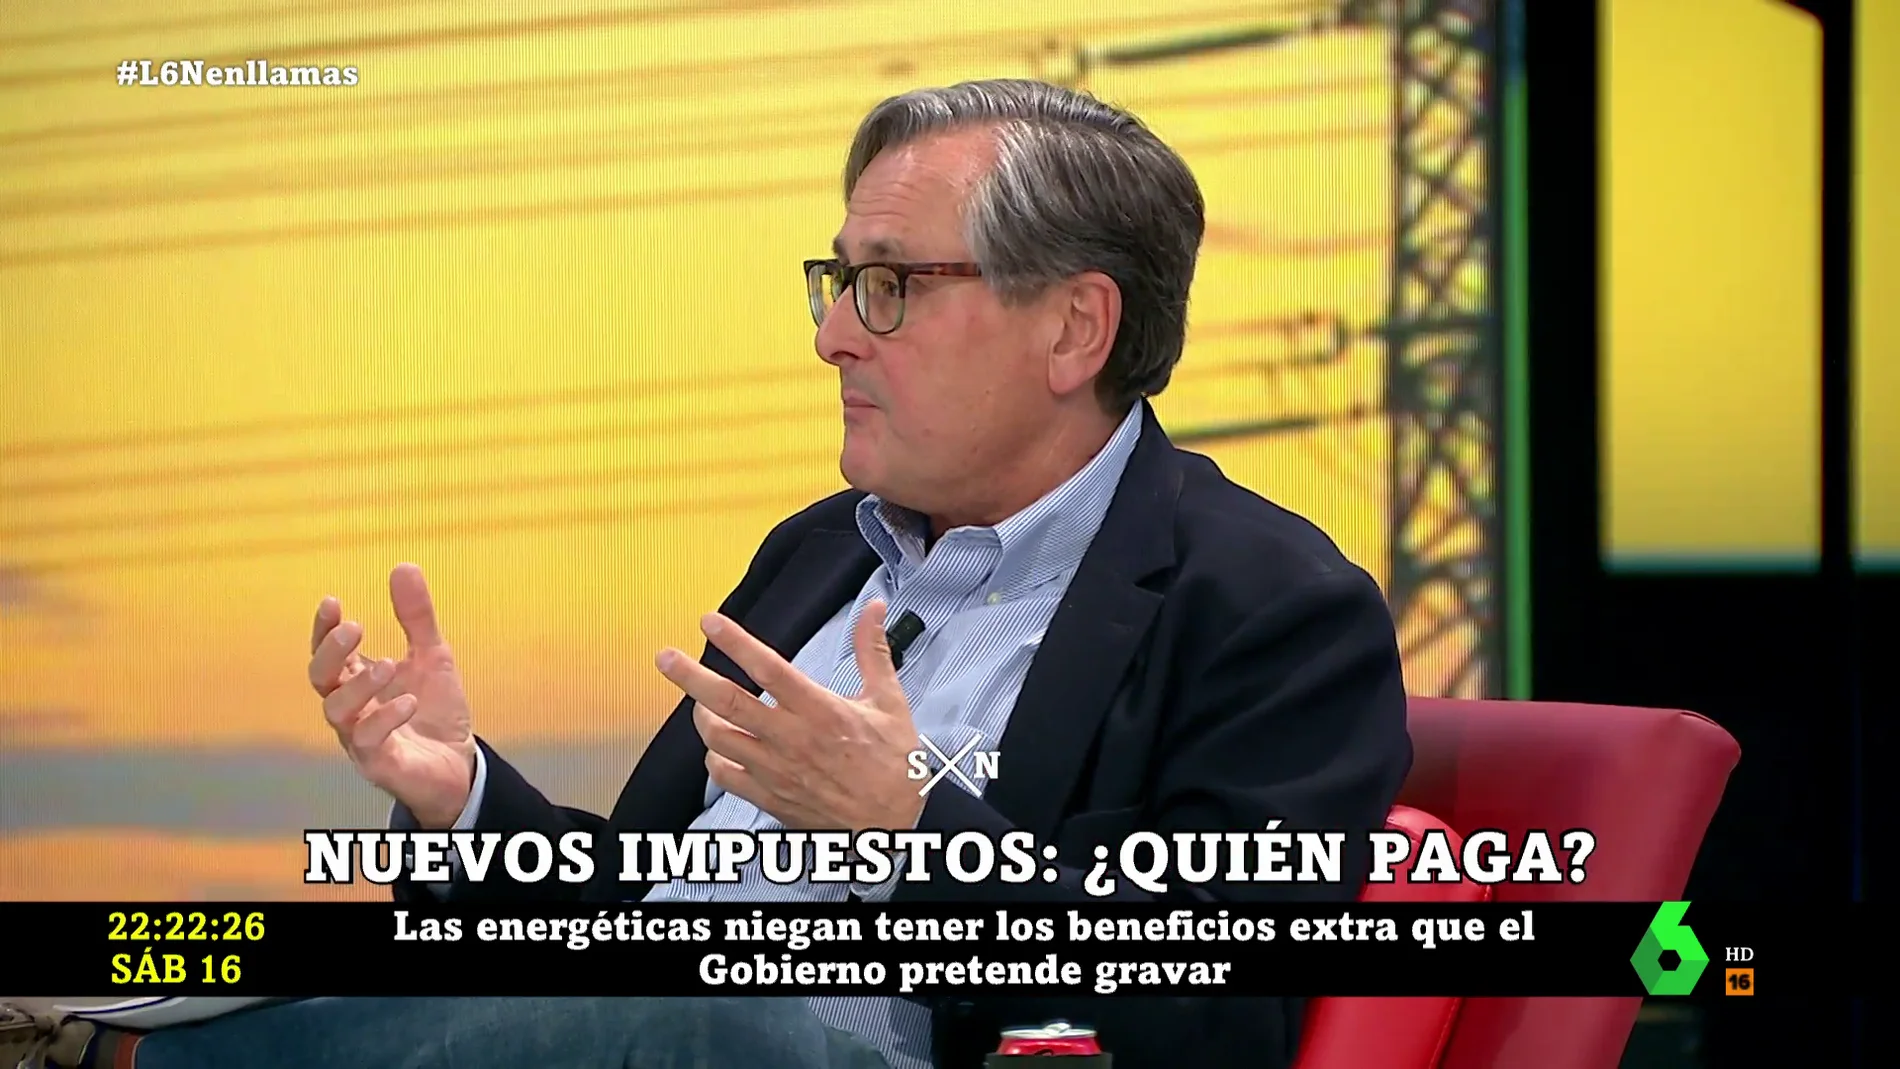 Paco Marhuenda, tajante contra los nuevos impuestos a las energéticas y la banca: "No va a servir para nada"